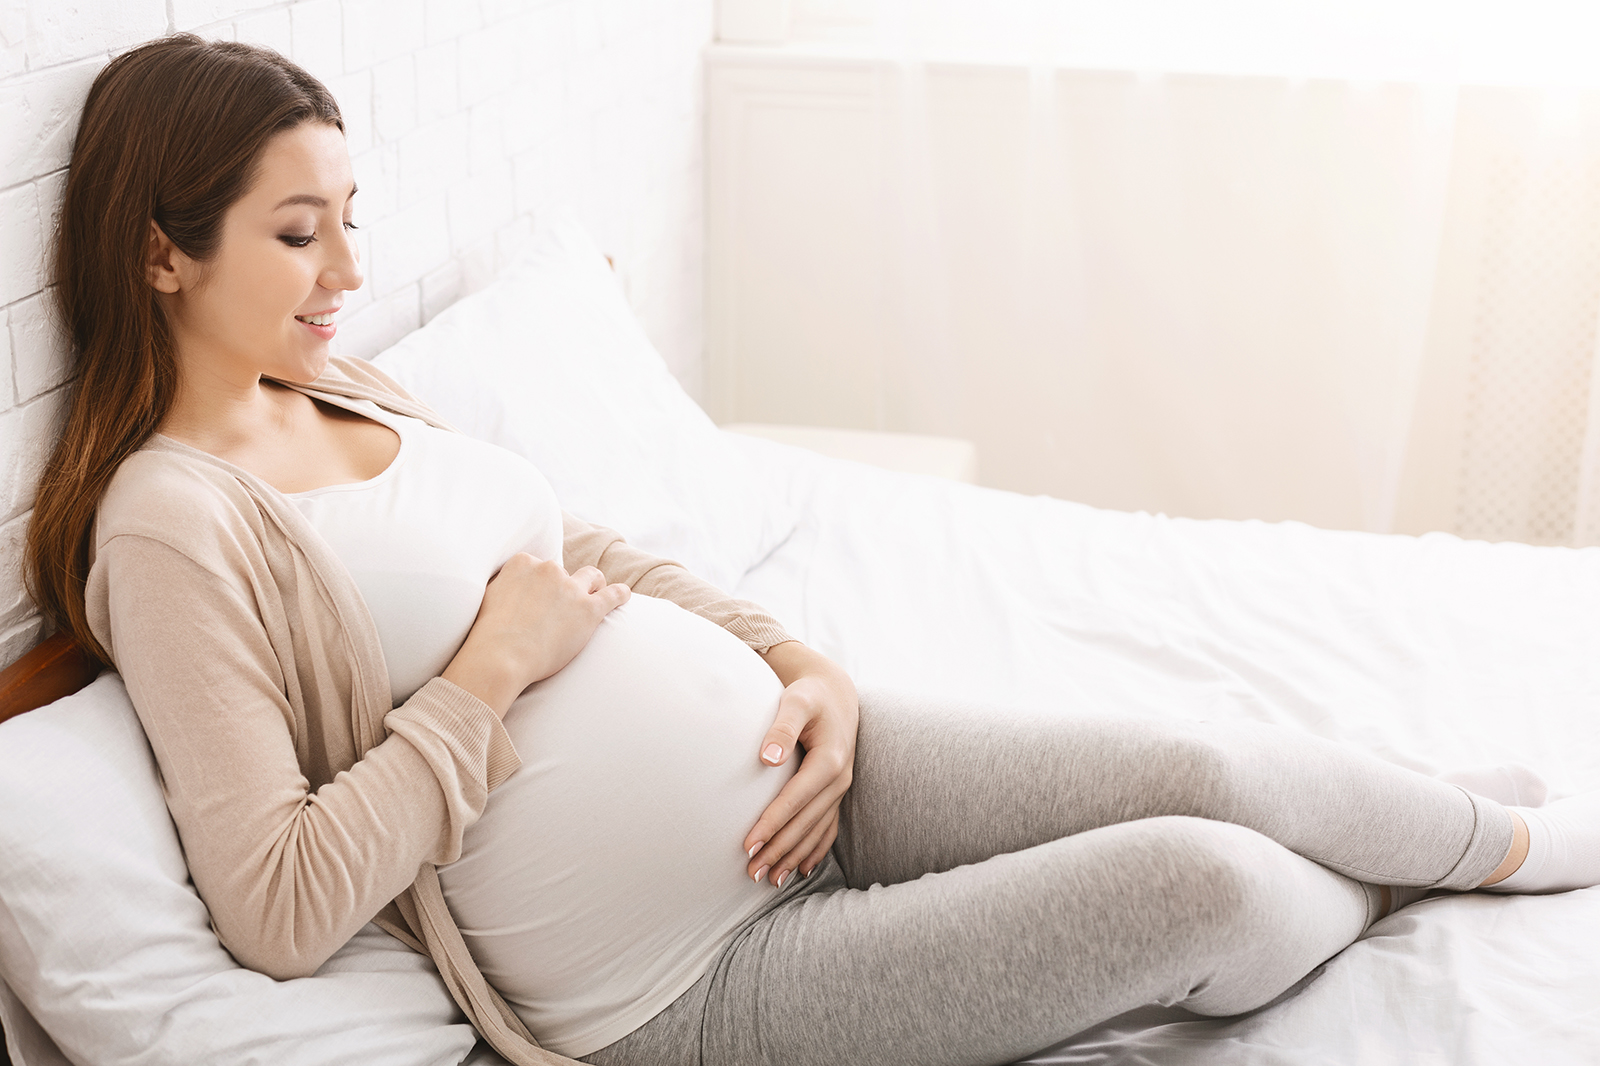 Femme enceinte avec tenue confortable beige et grise